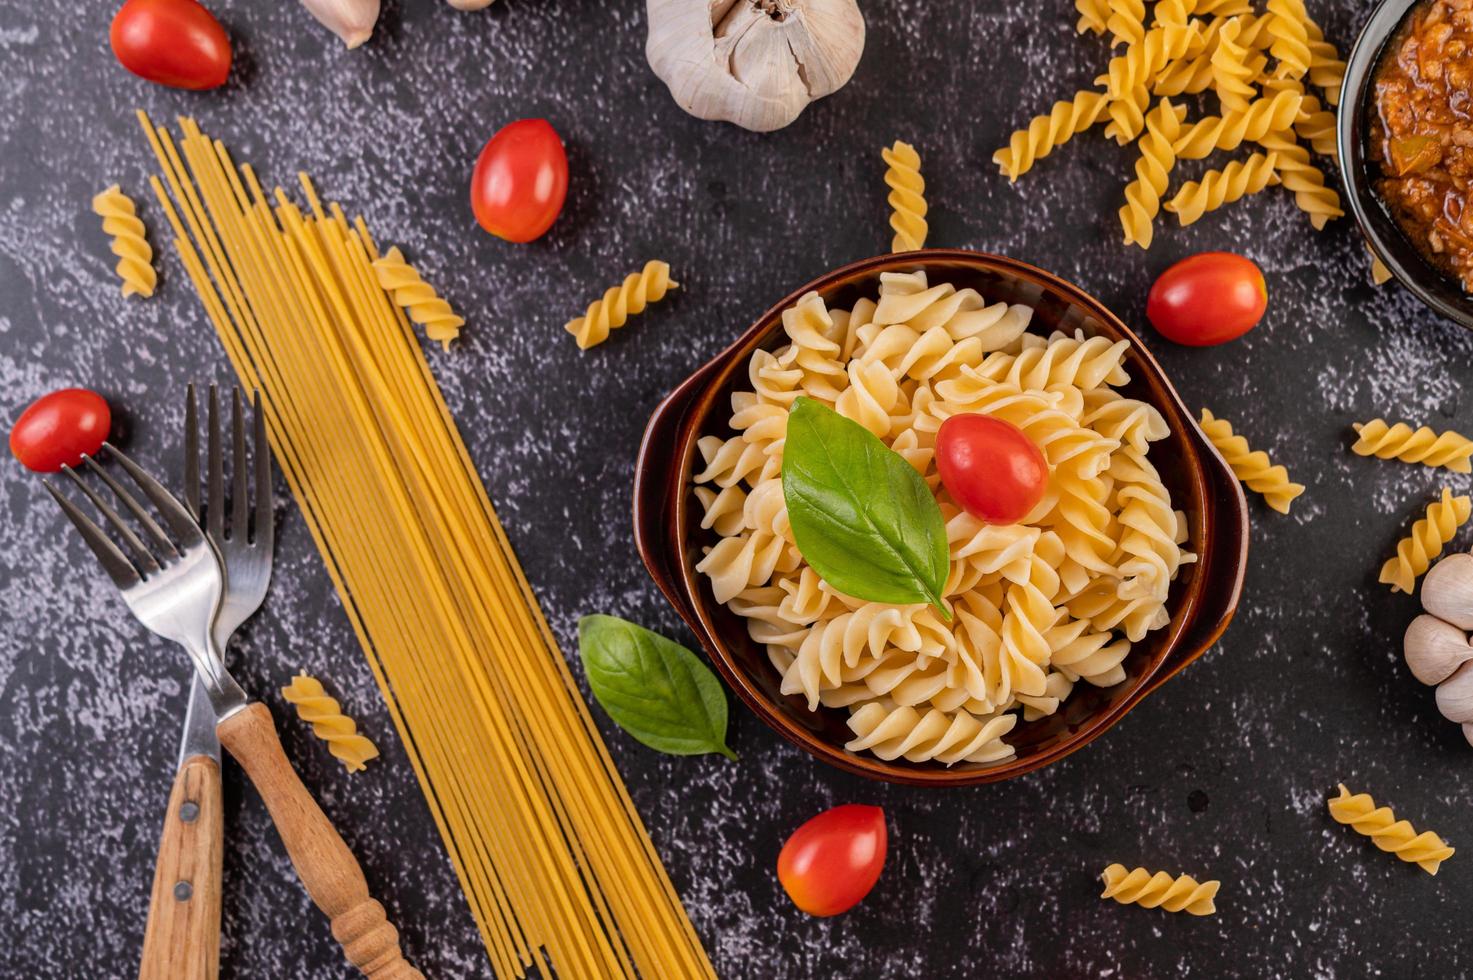 macaroni pasta met groenten foto